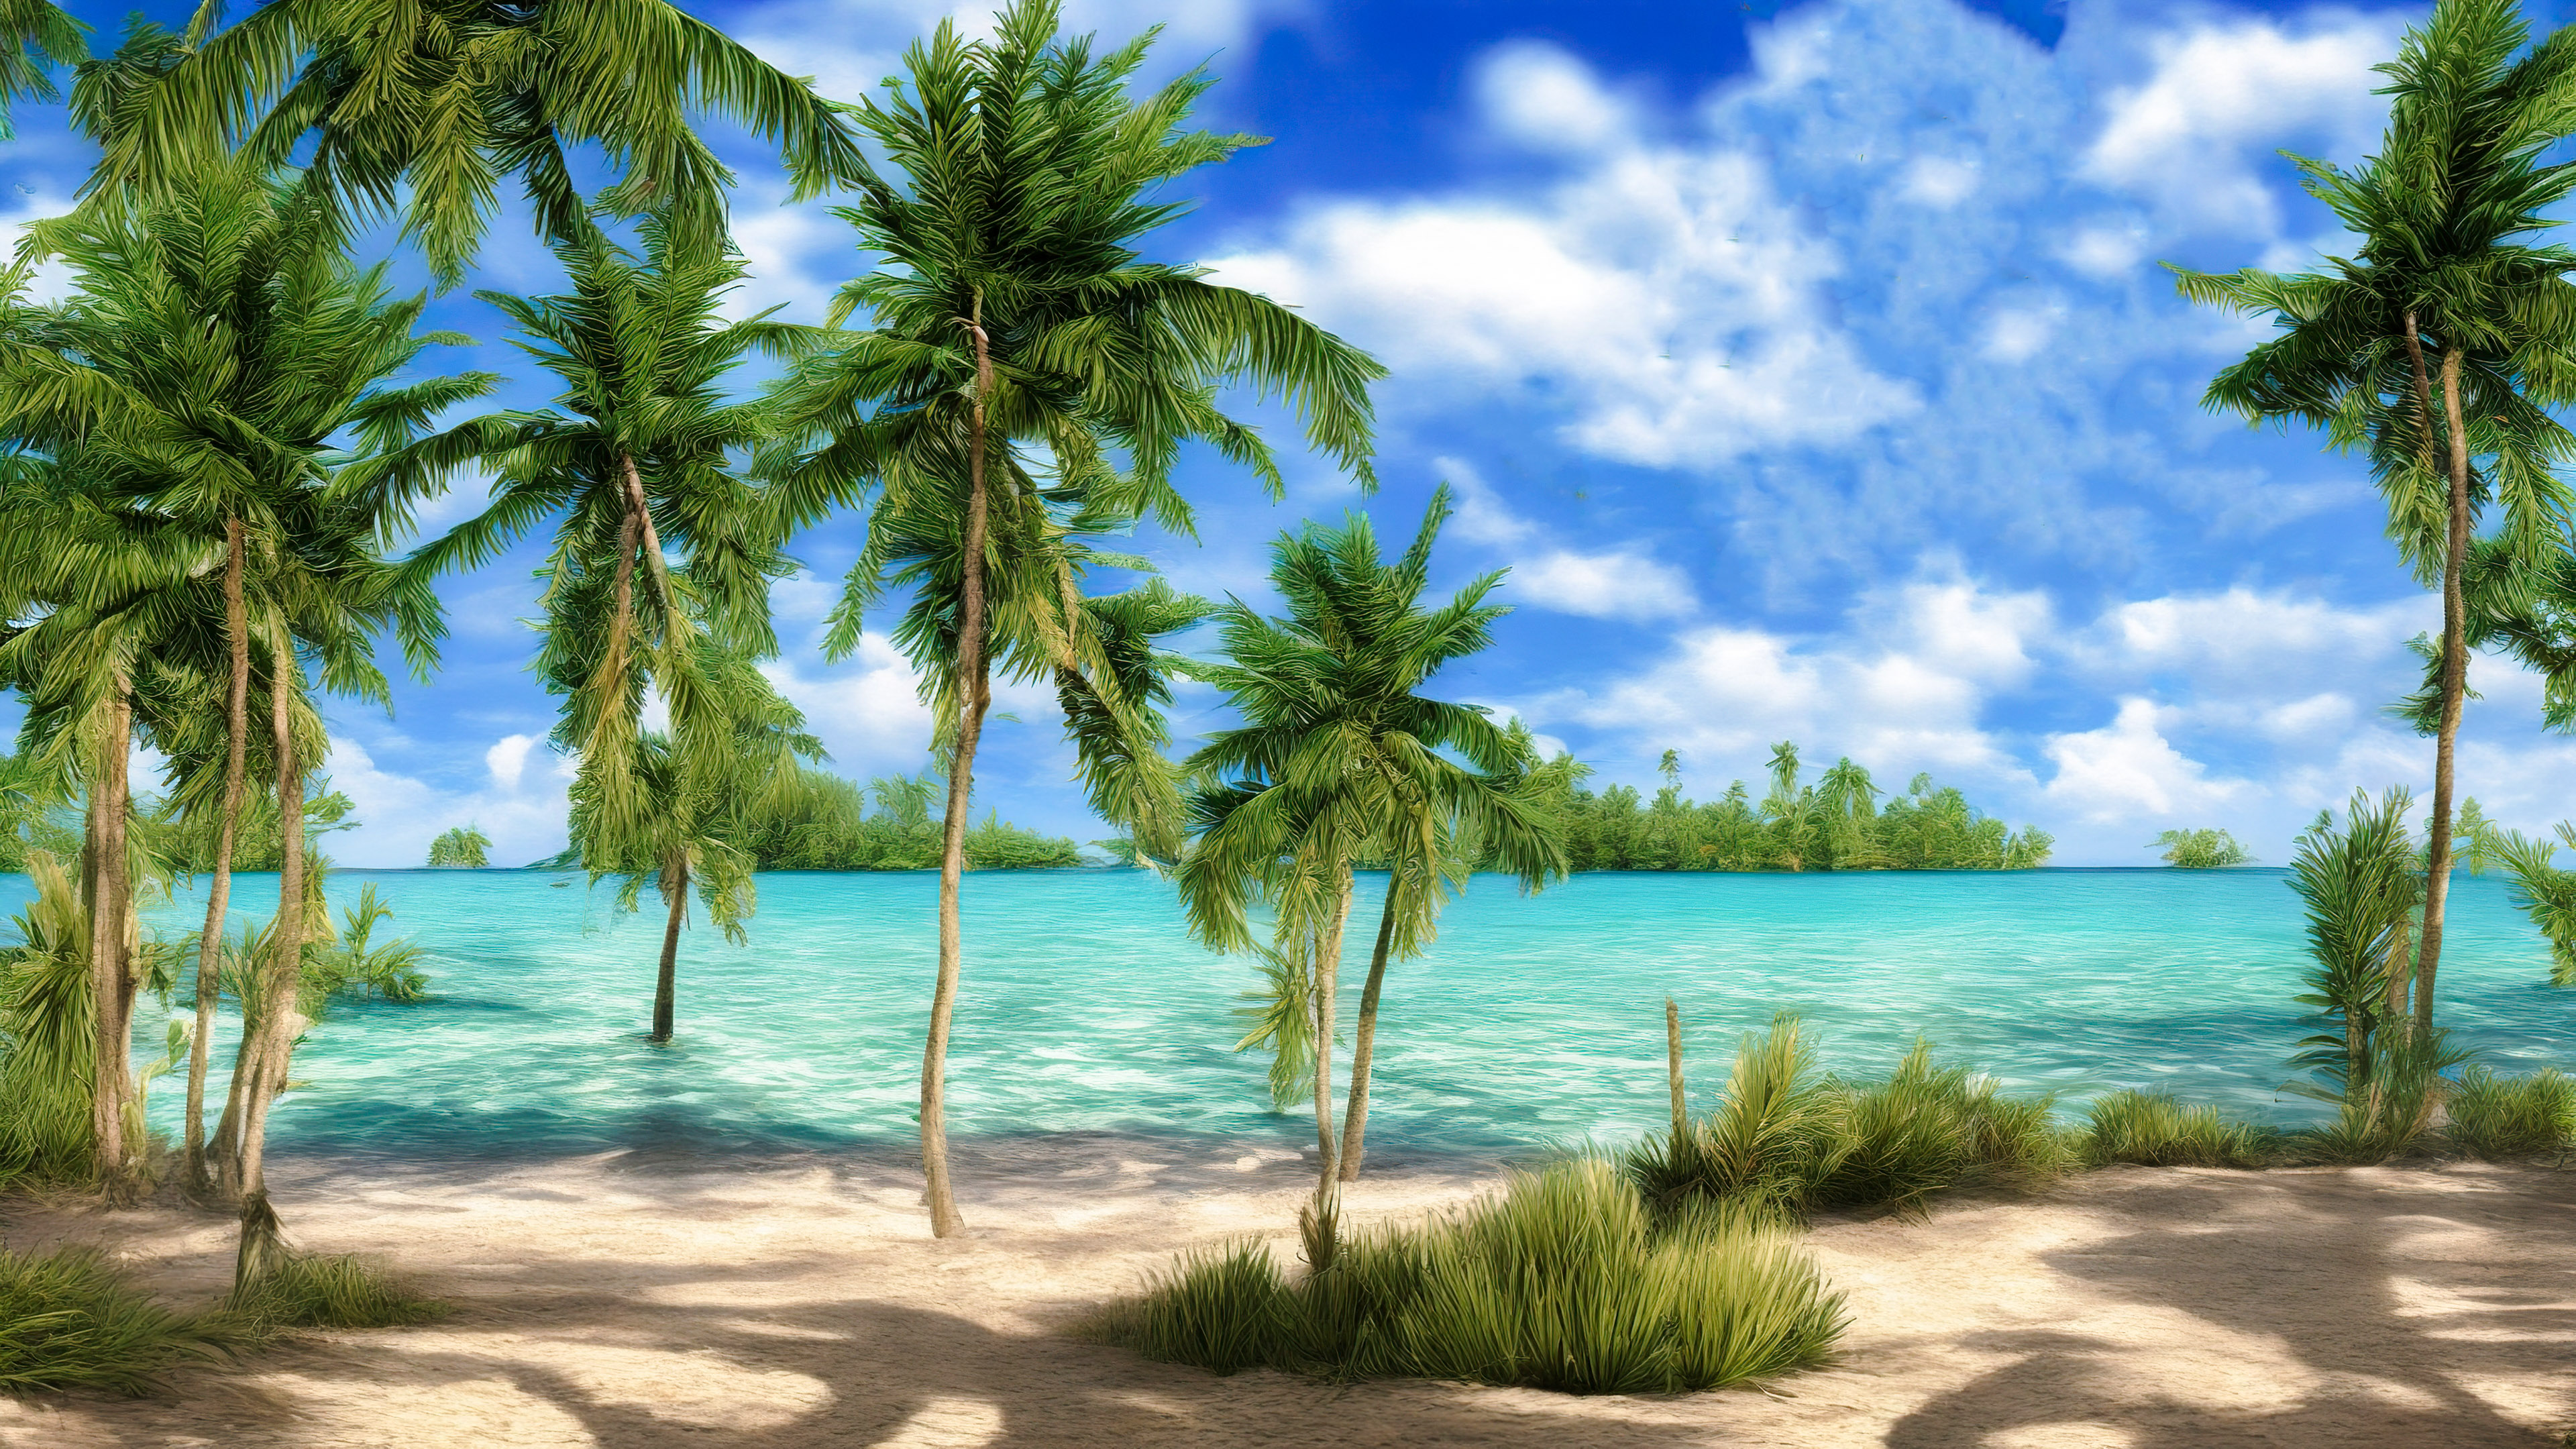 Téléchargez ce fond d'écran nature enchanteur en 4K mettant en scène une plage paisible avec des eaux turquoise cristallines et des palmiers balançant dans la brise.